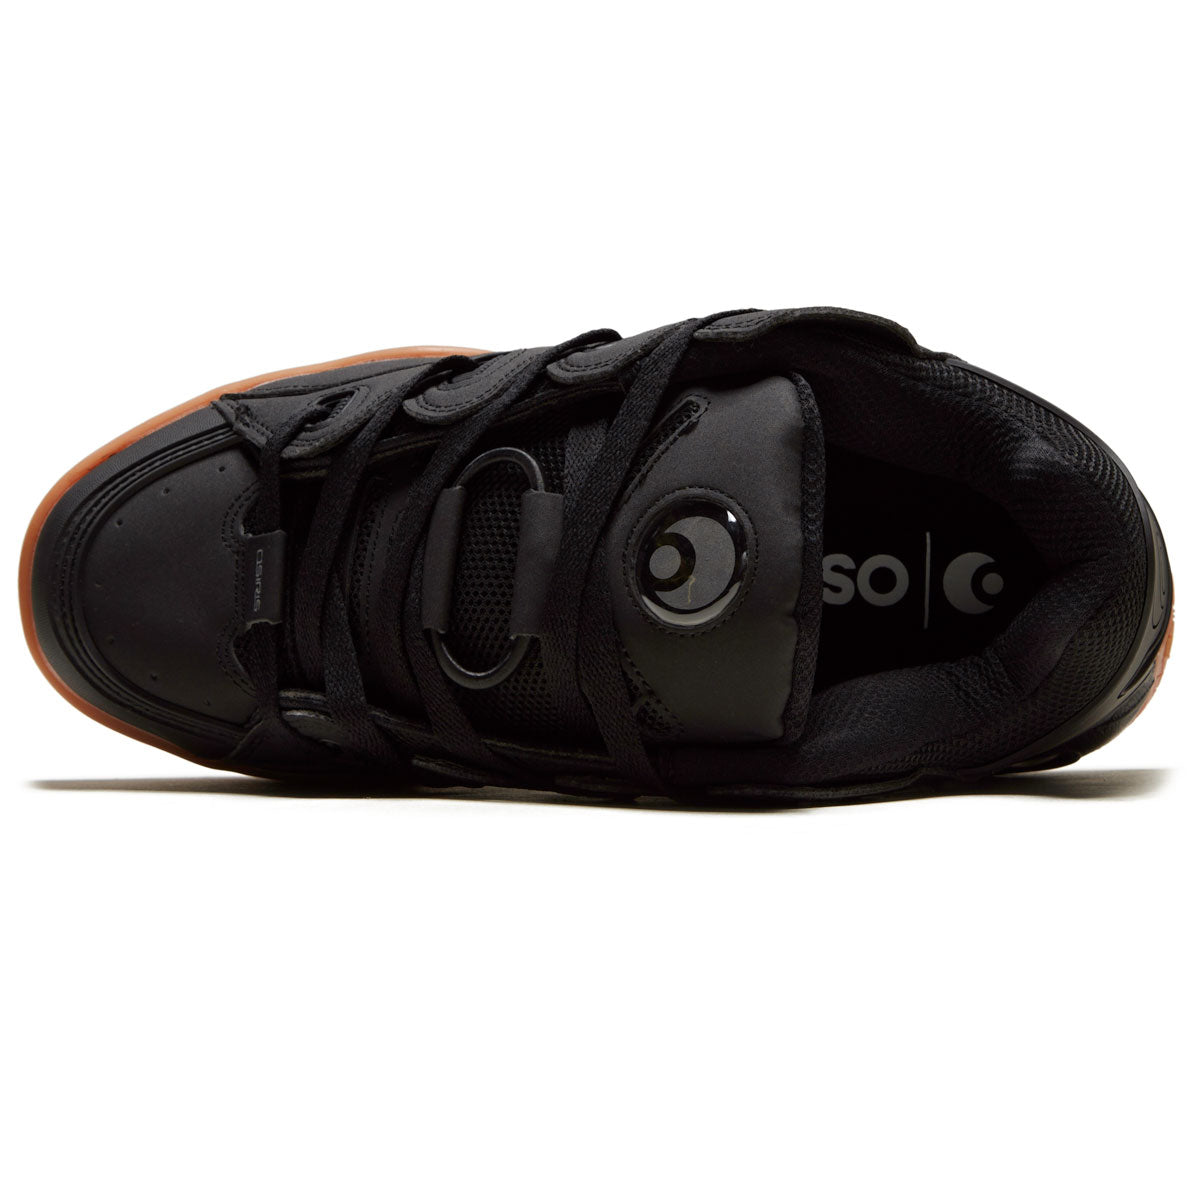 Osiris D3 Og Shoes - Black/Black/Gum image 3